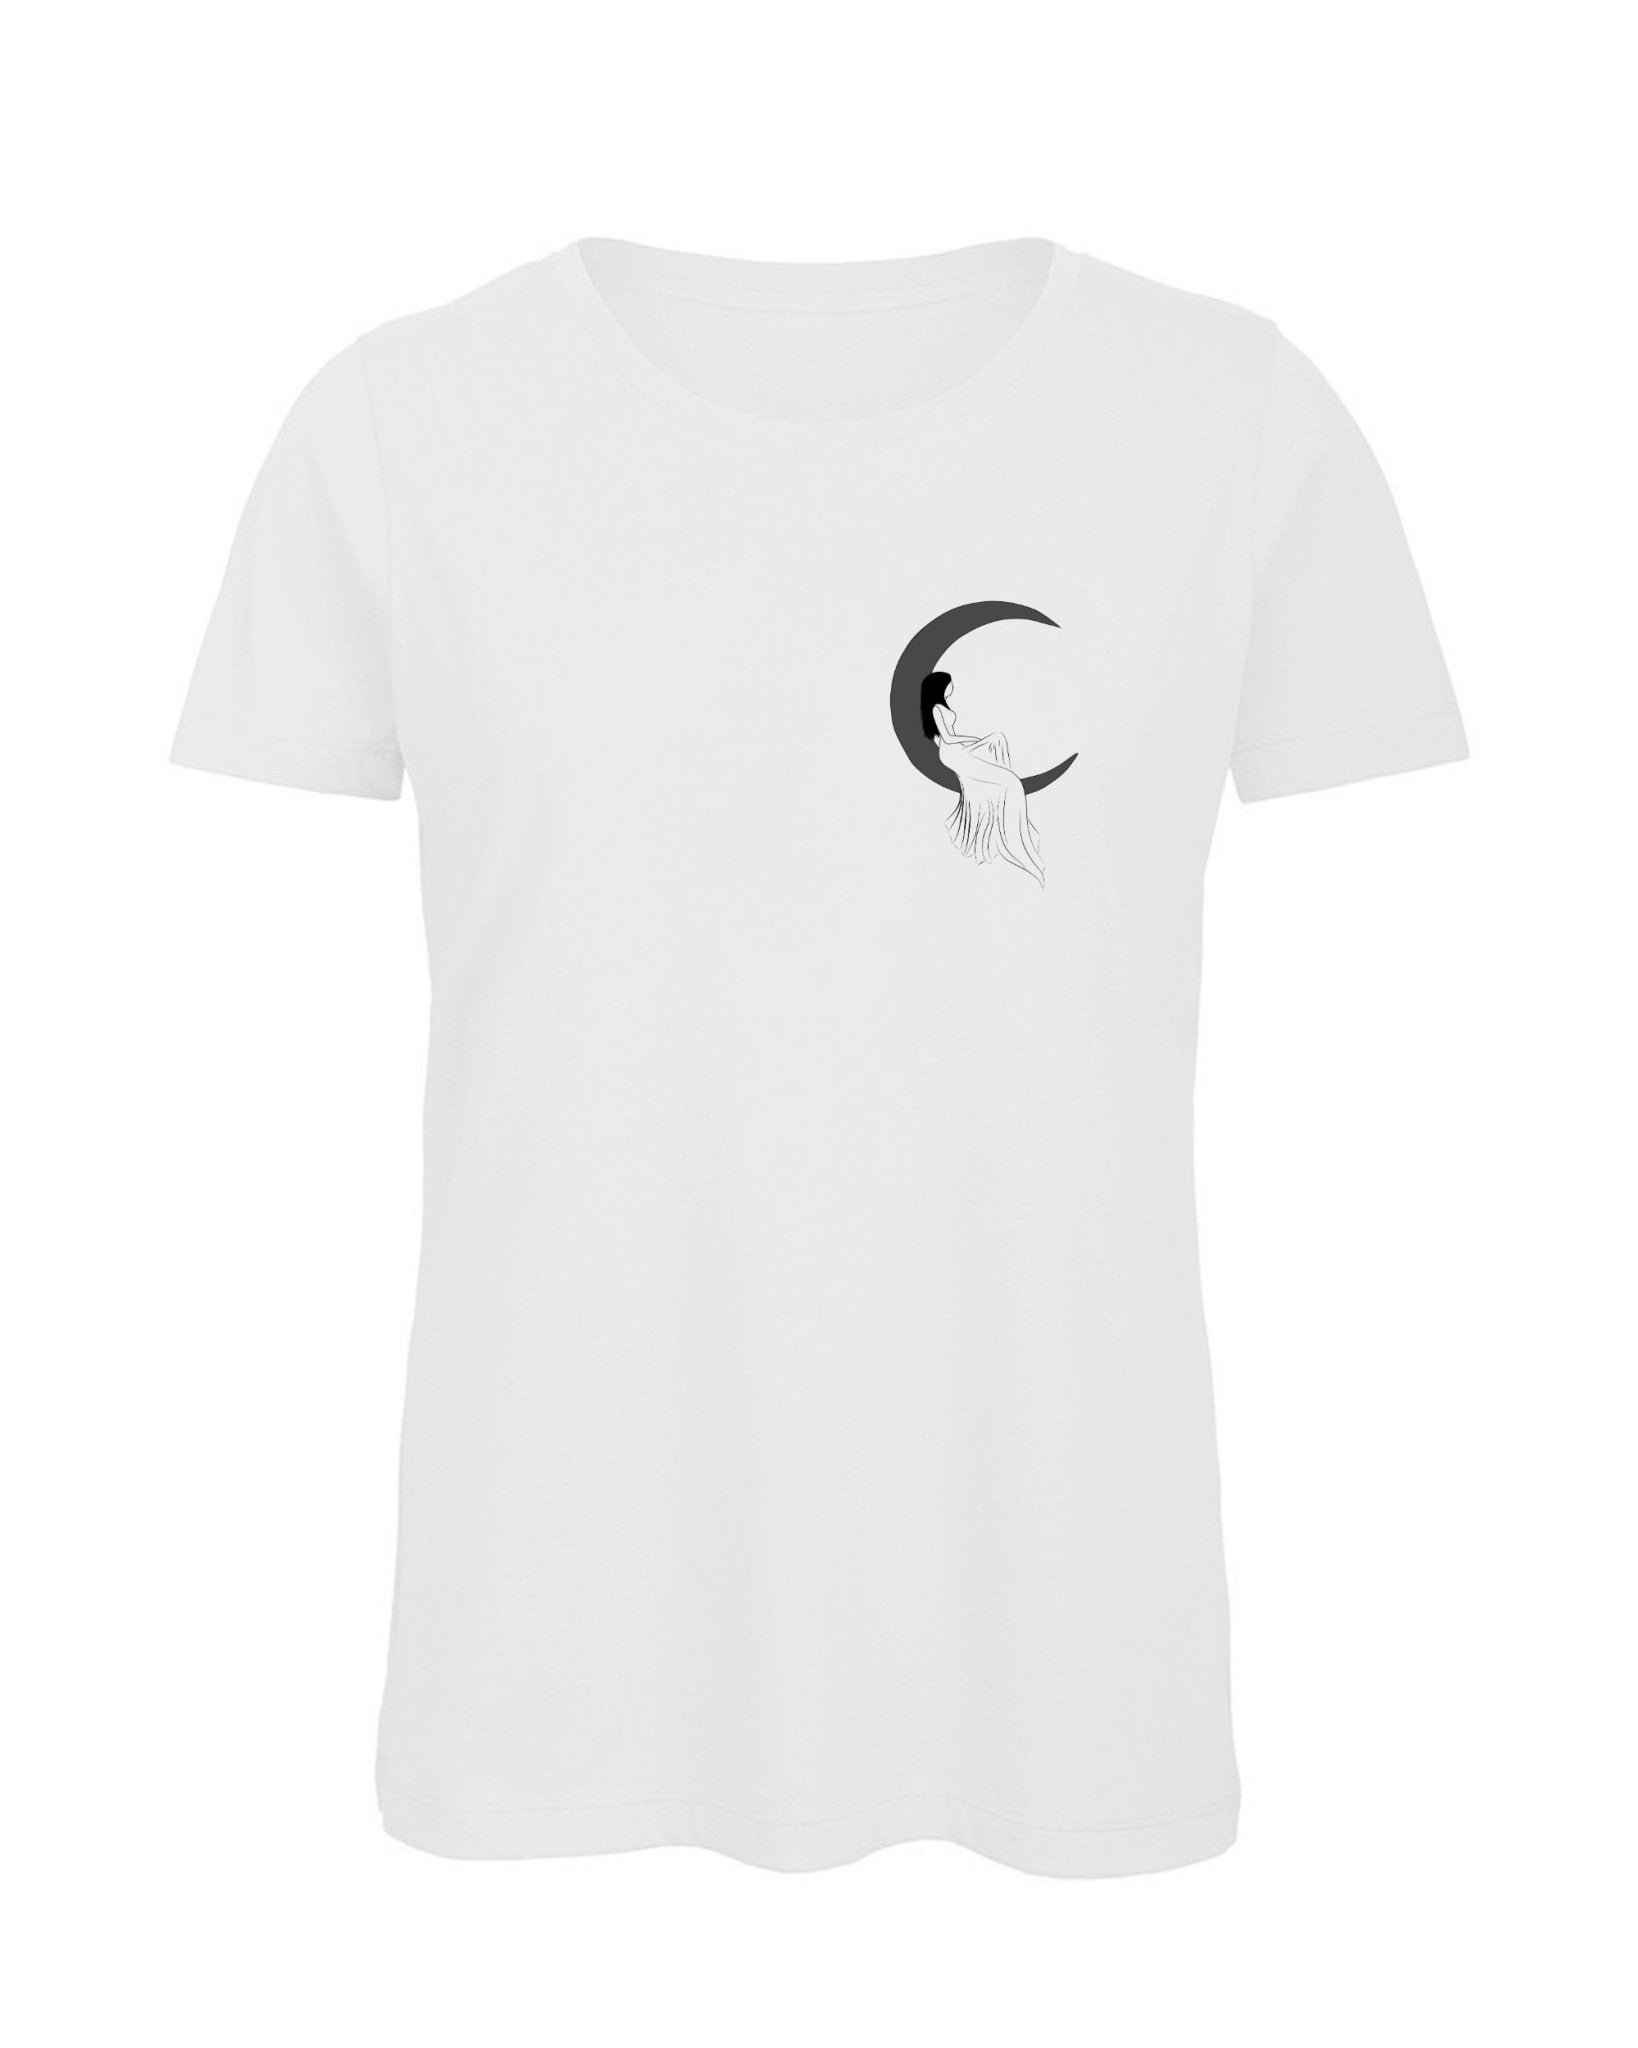 T-shirt bianca con ricamo Ragazza Sulla Luna - Follie by Alice